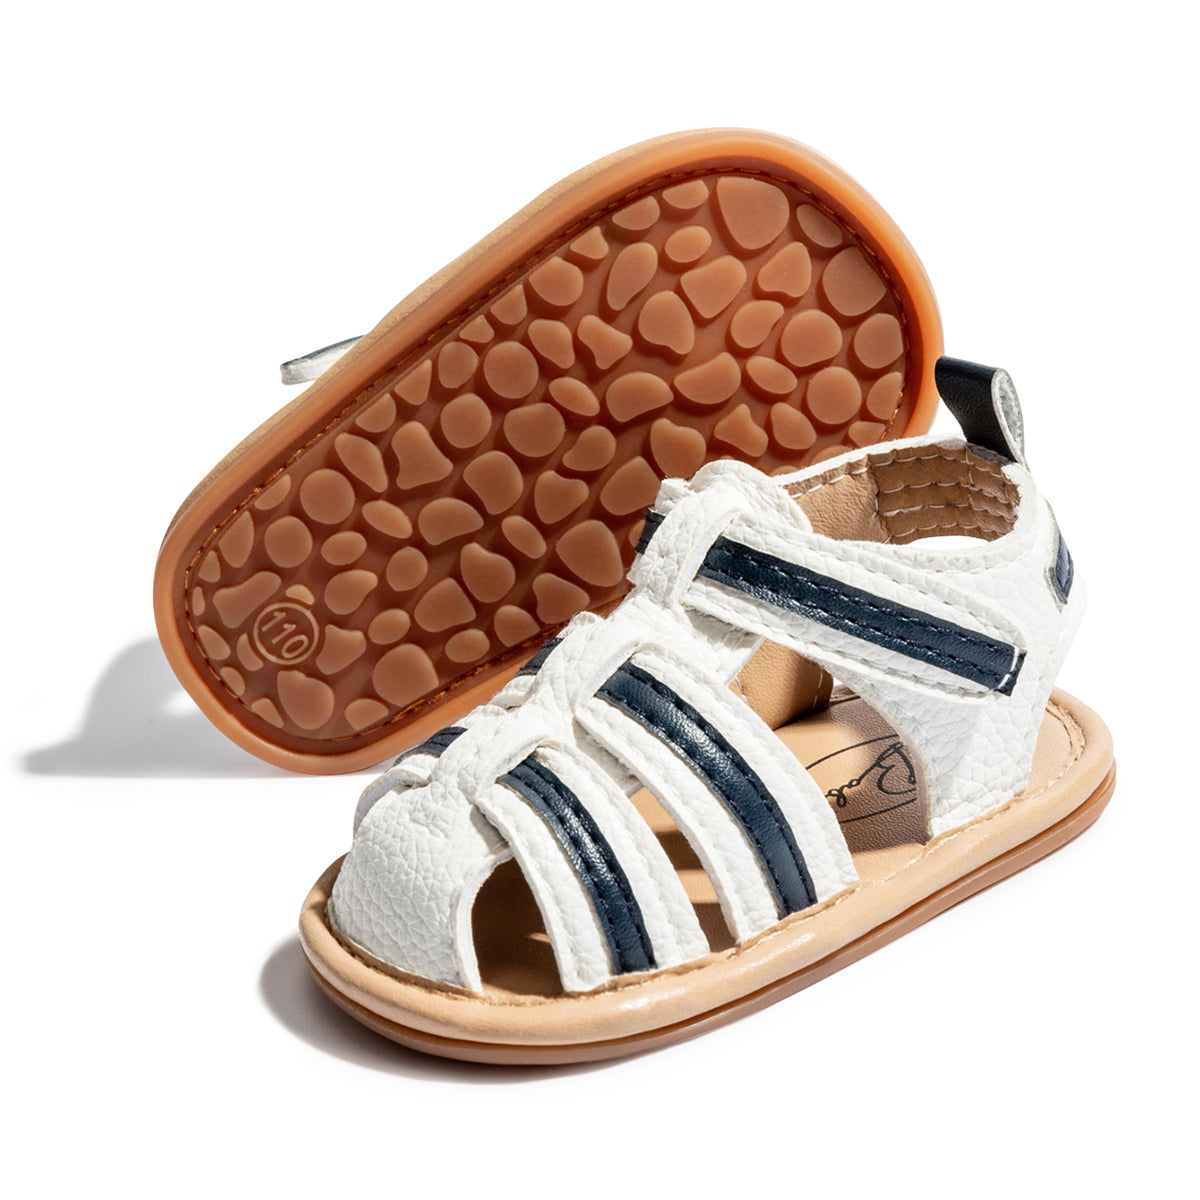 Summer Sandals - Blue Zebra